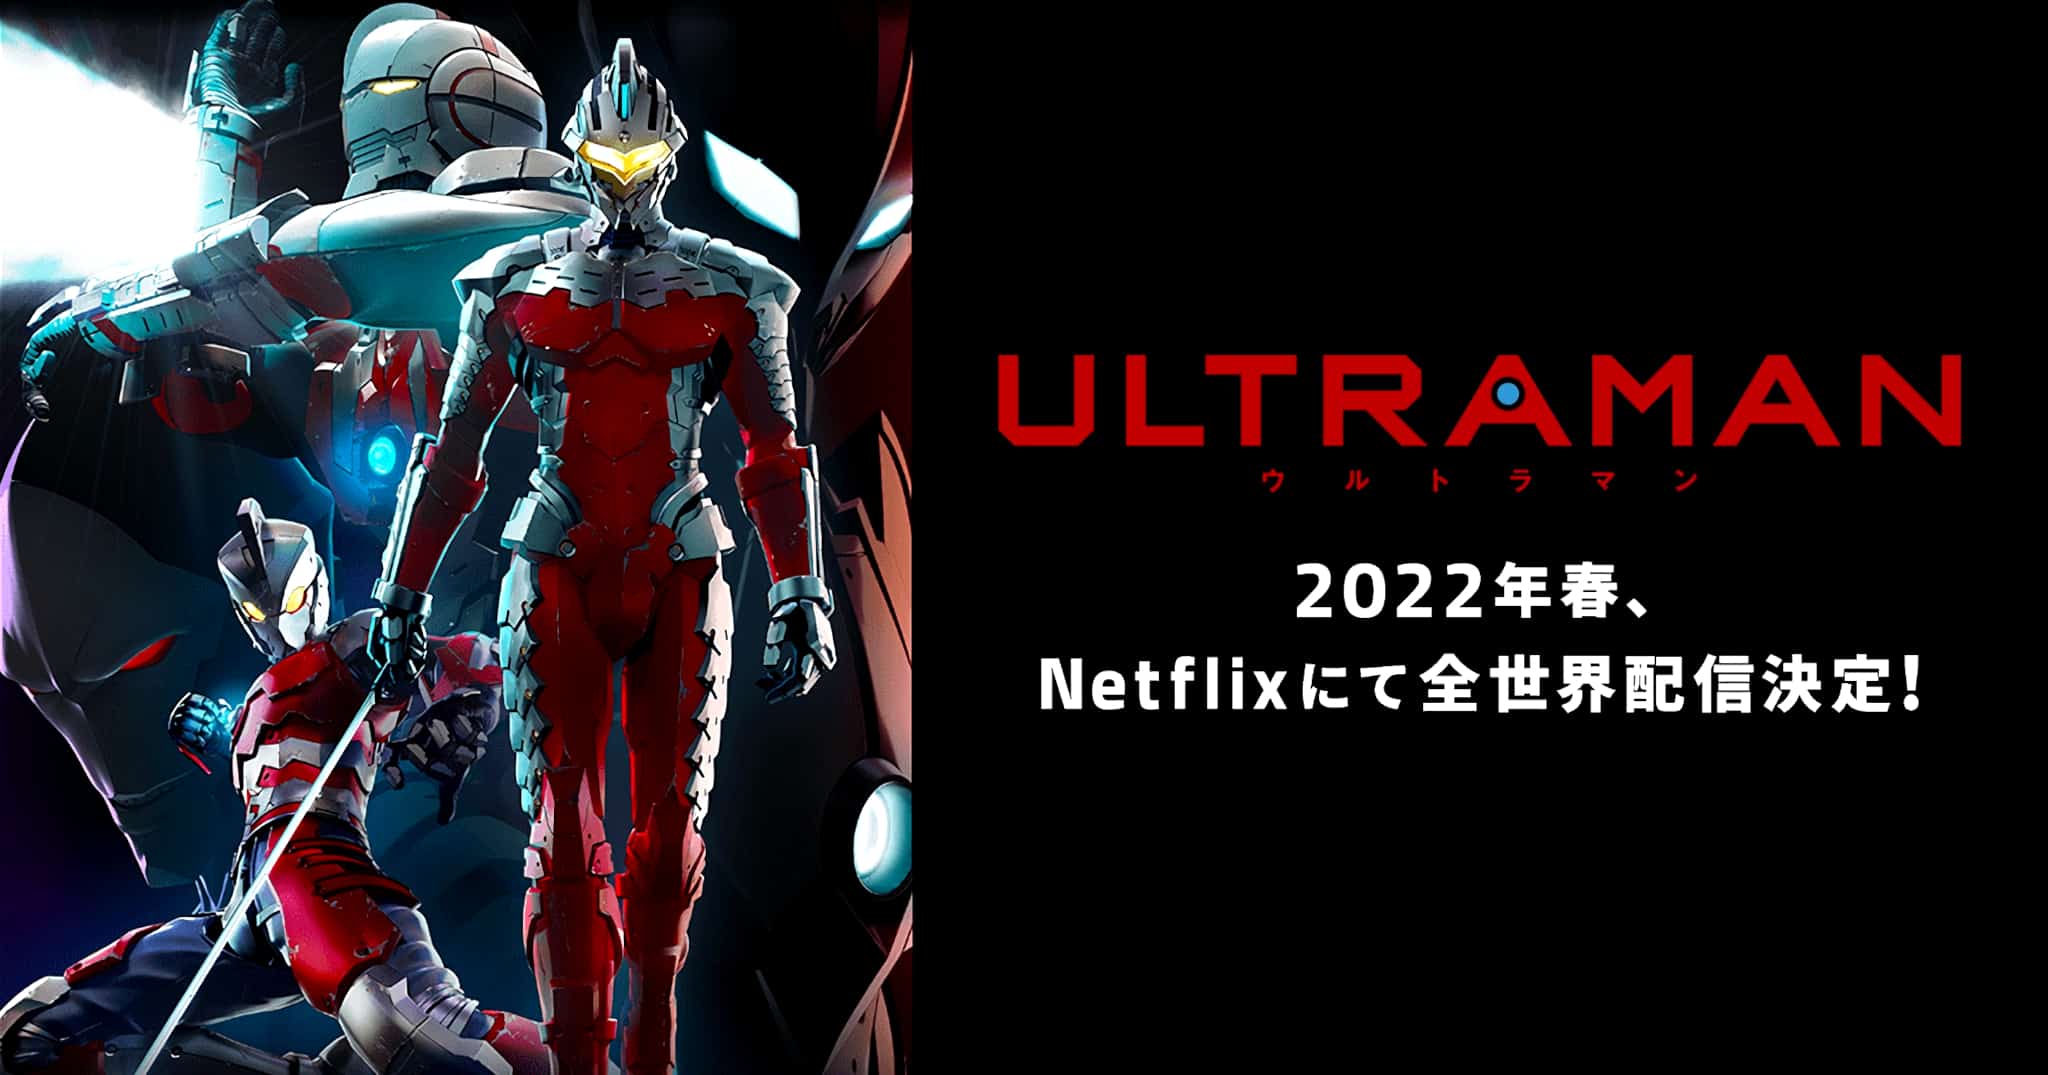 Annonce de la date de sortie de anime Ultraman Saison 2